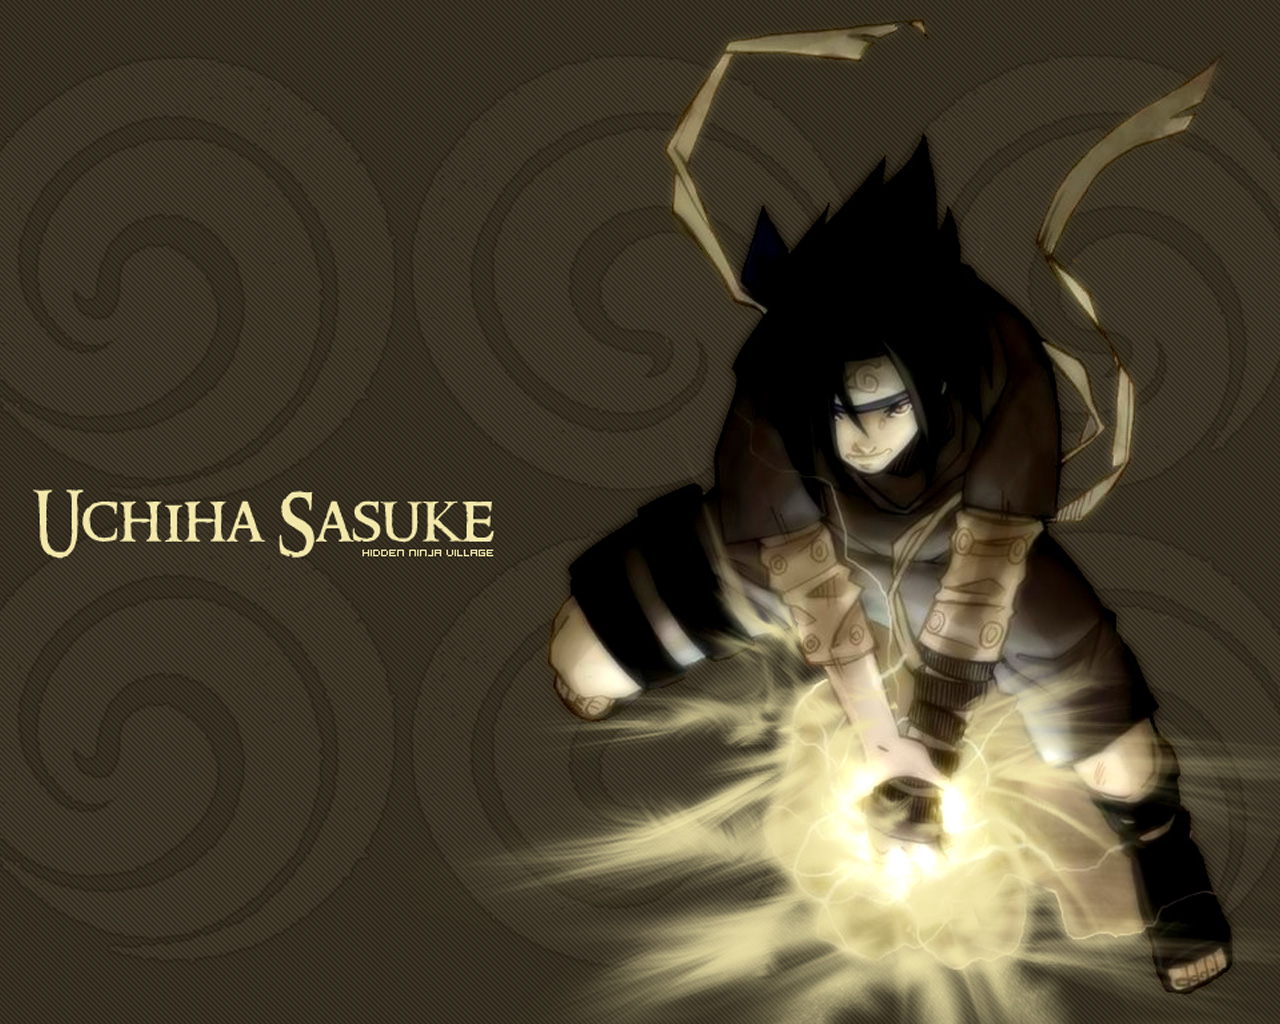 10uchiha sasuke pics wallpaperhtml With the title Uchiha Sasuke